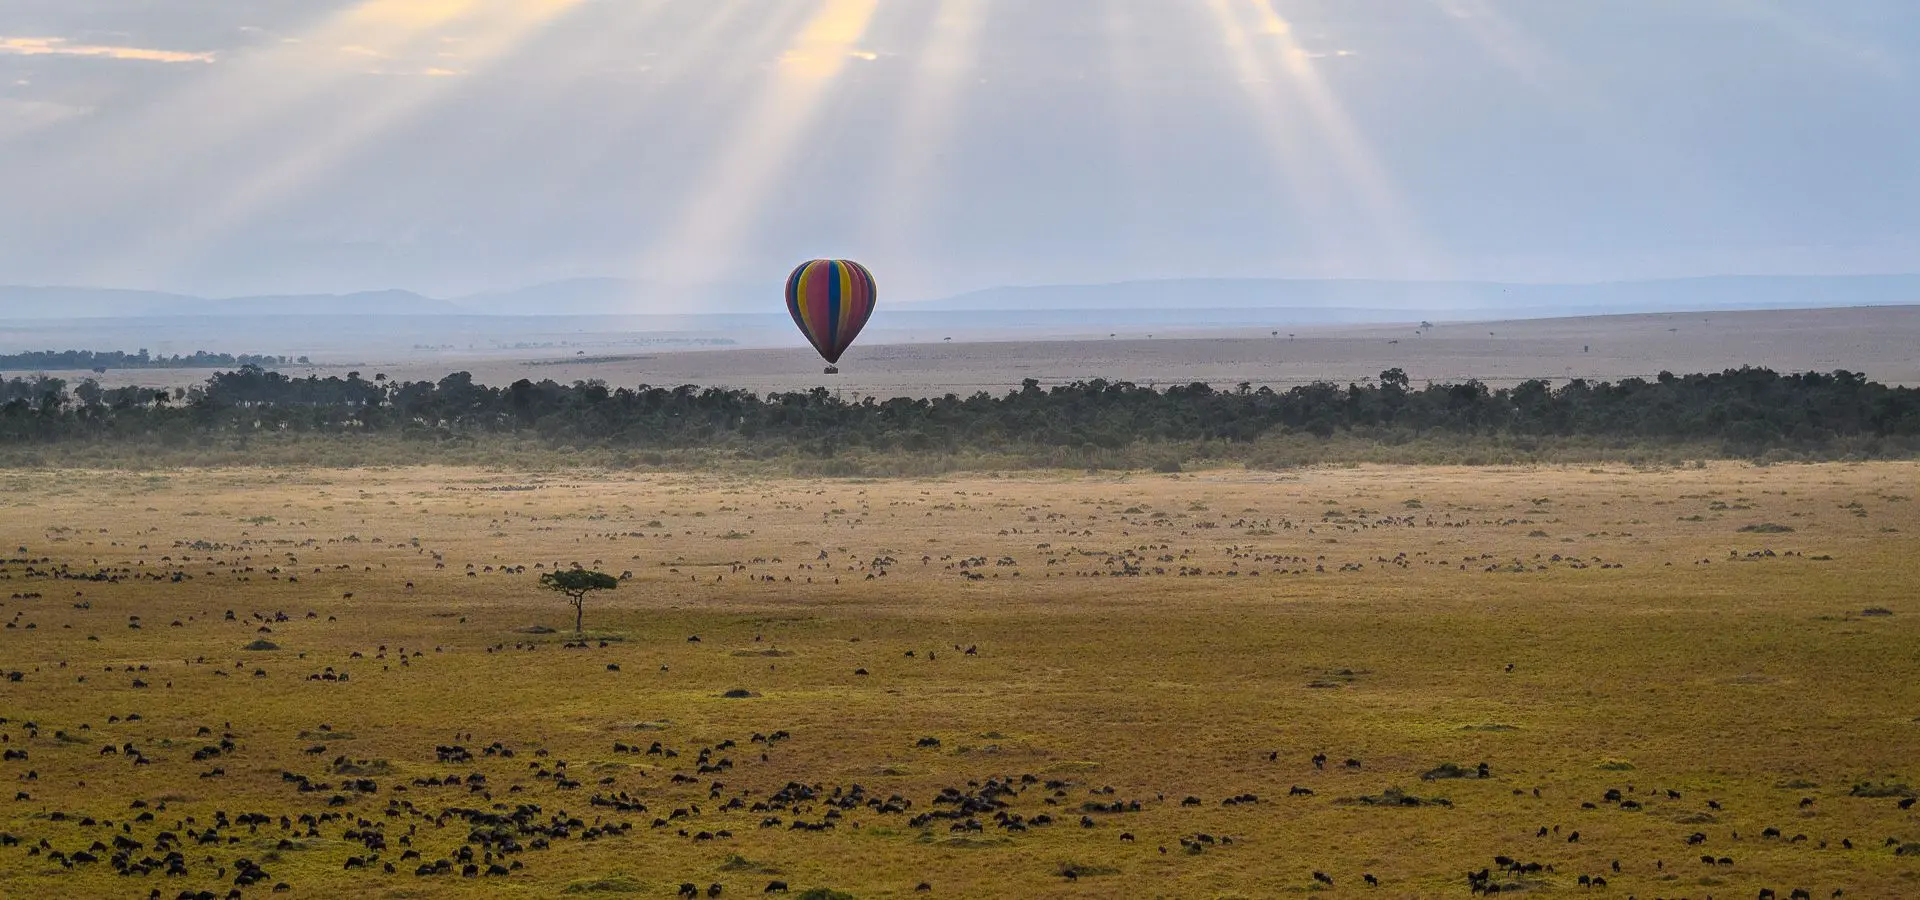 Extra activities on safaris in Tanzania and Kenya - Viewing the Masai Mara on a hot air balloon ride